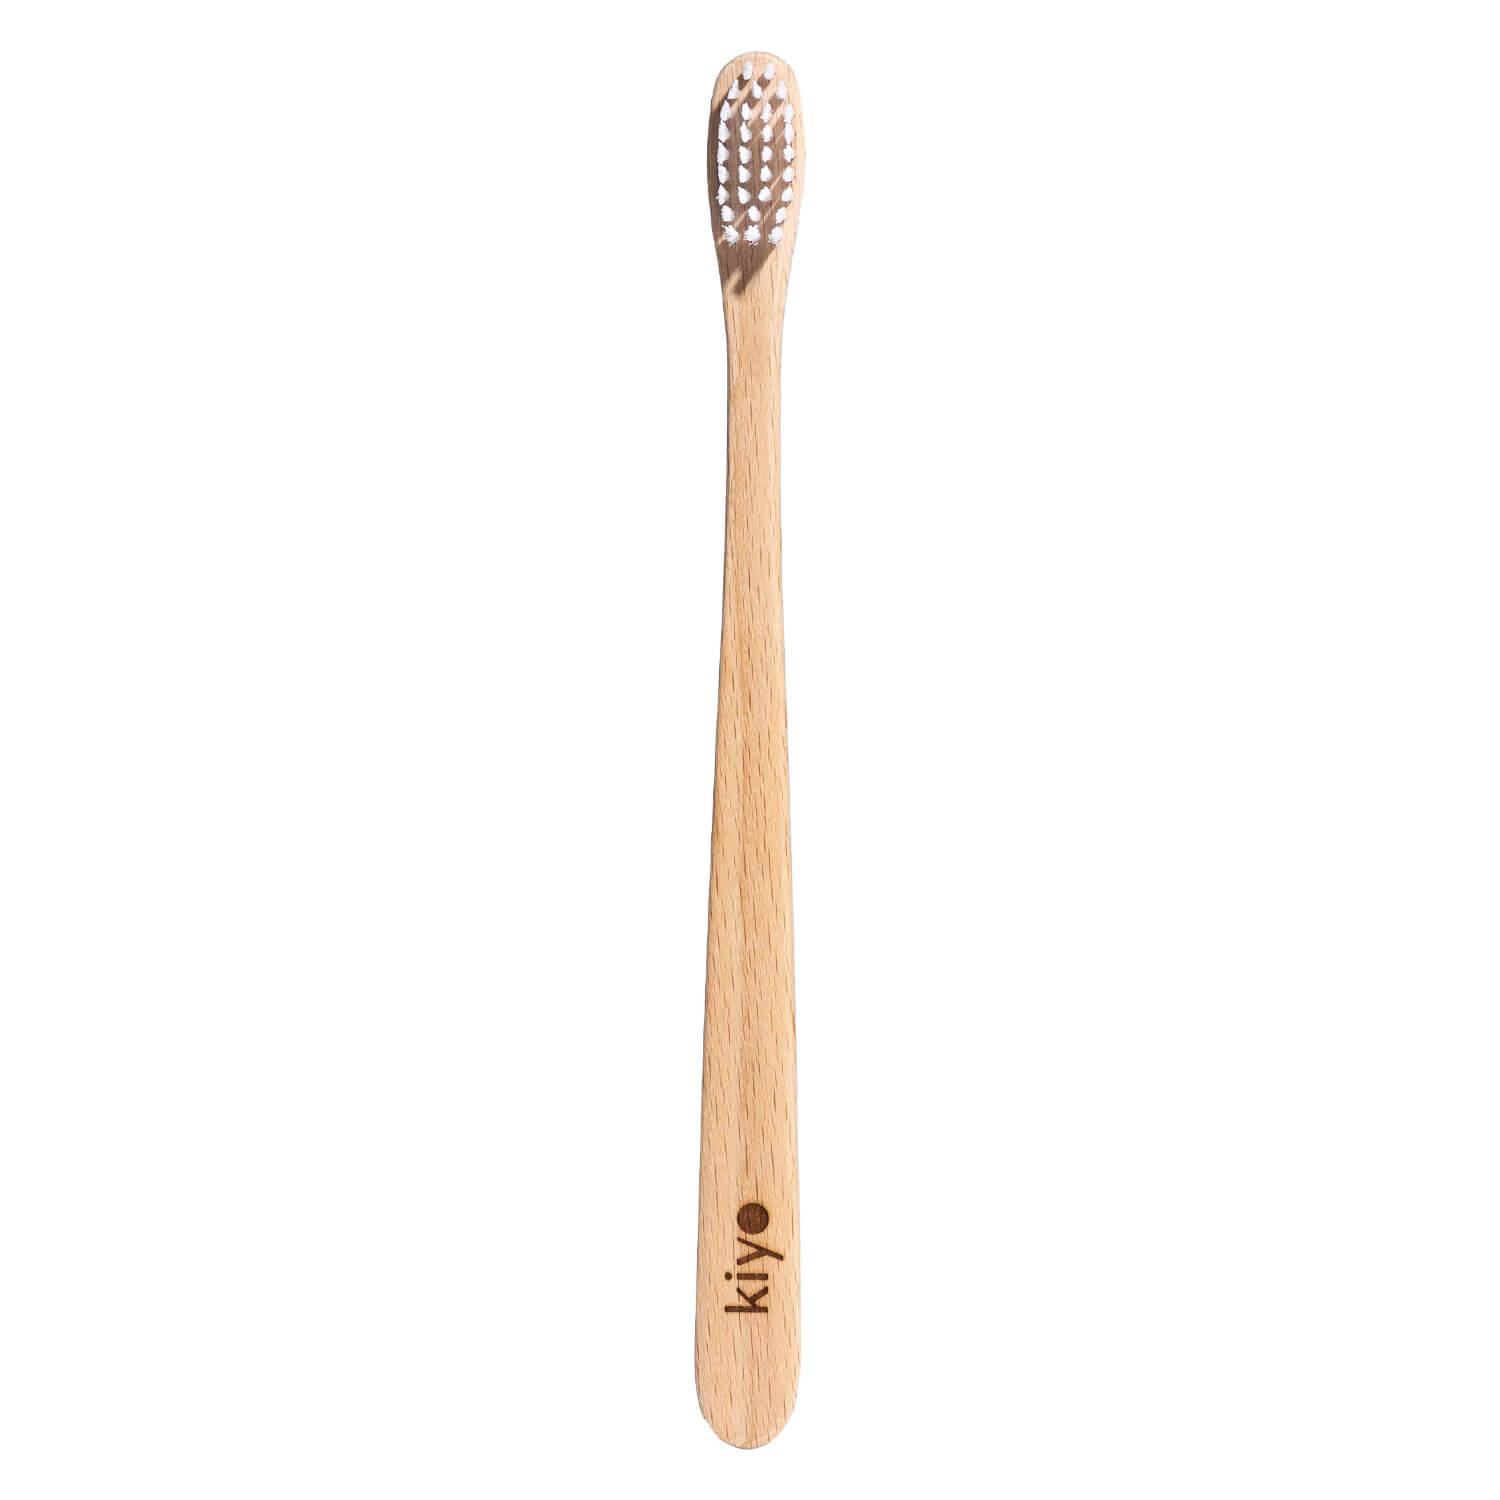 Kiyo - Swiss beech wood toothbrush soft